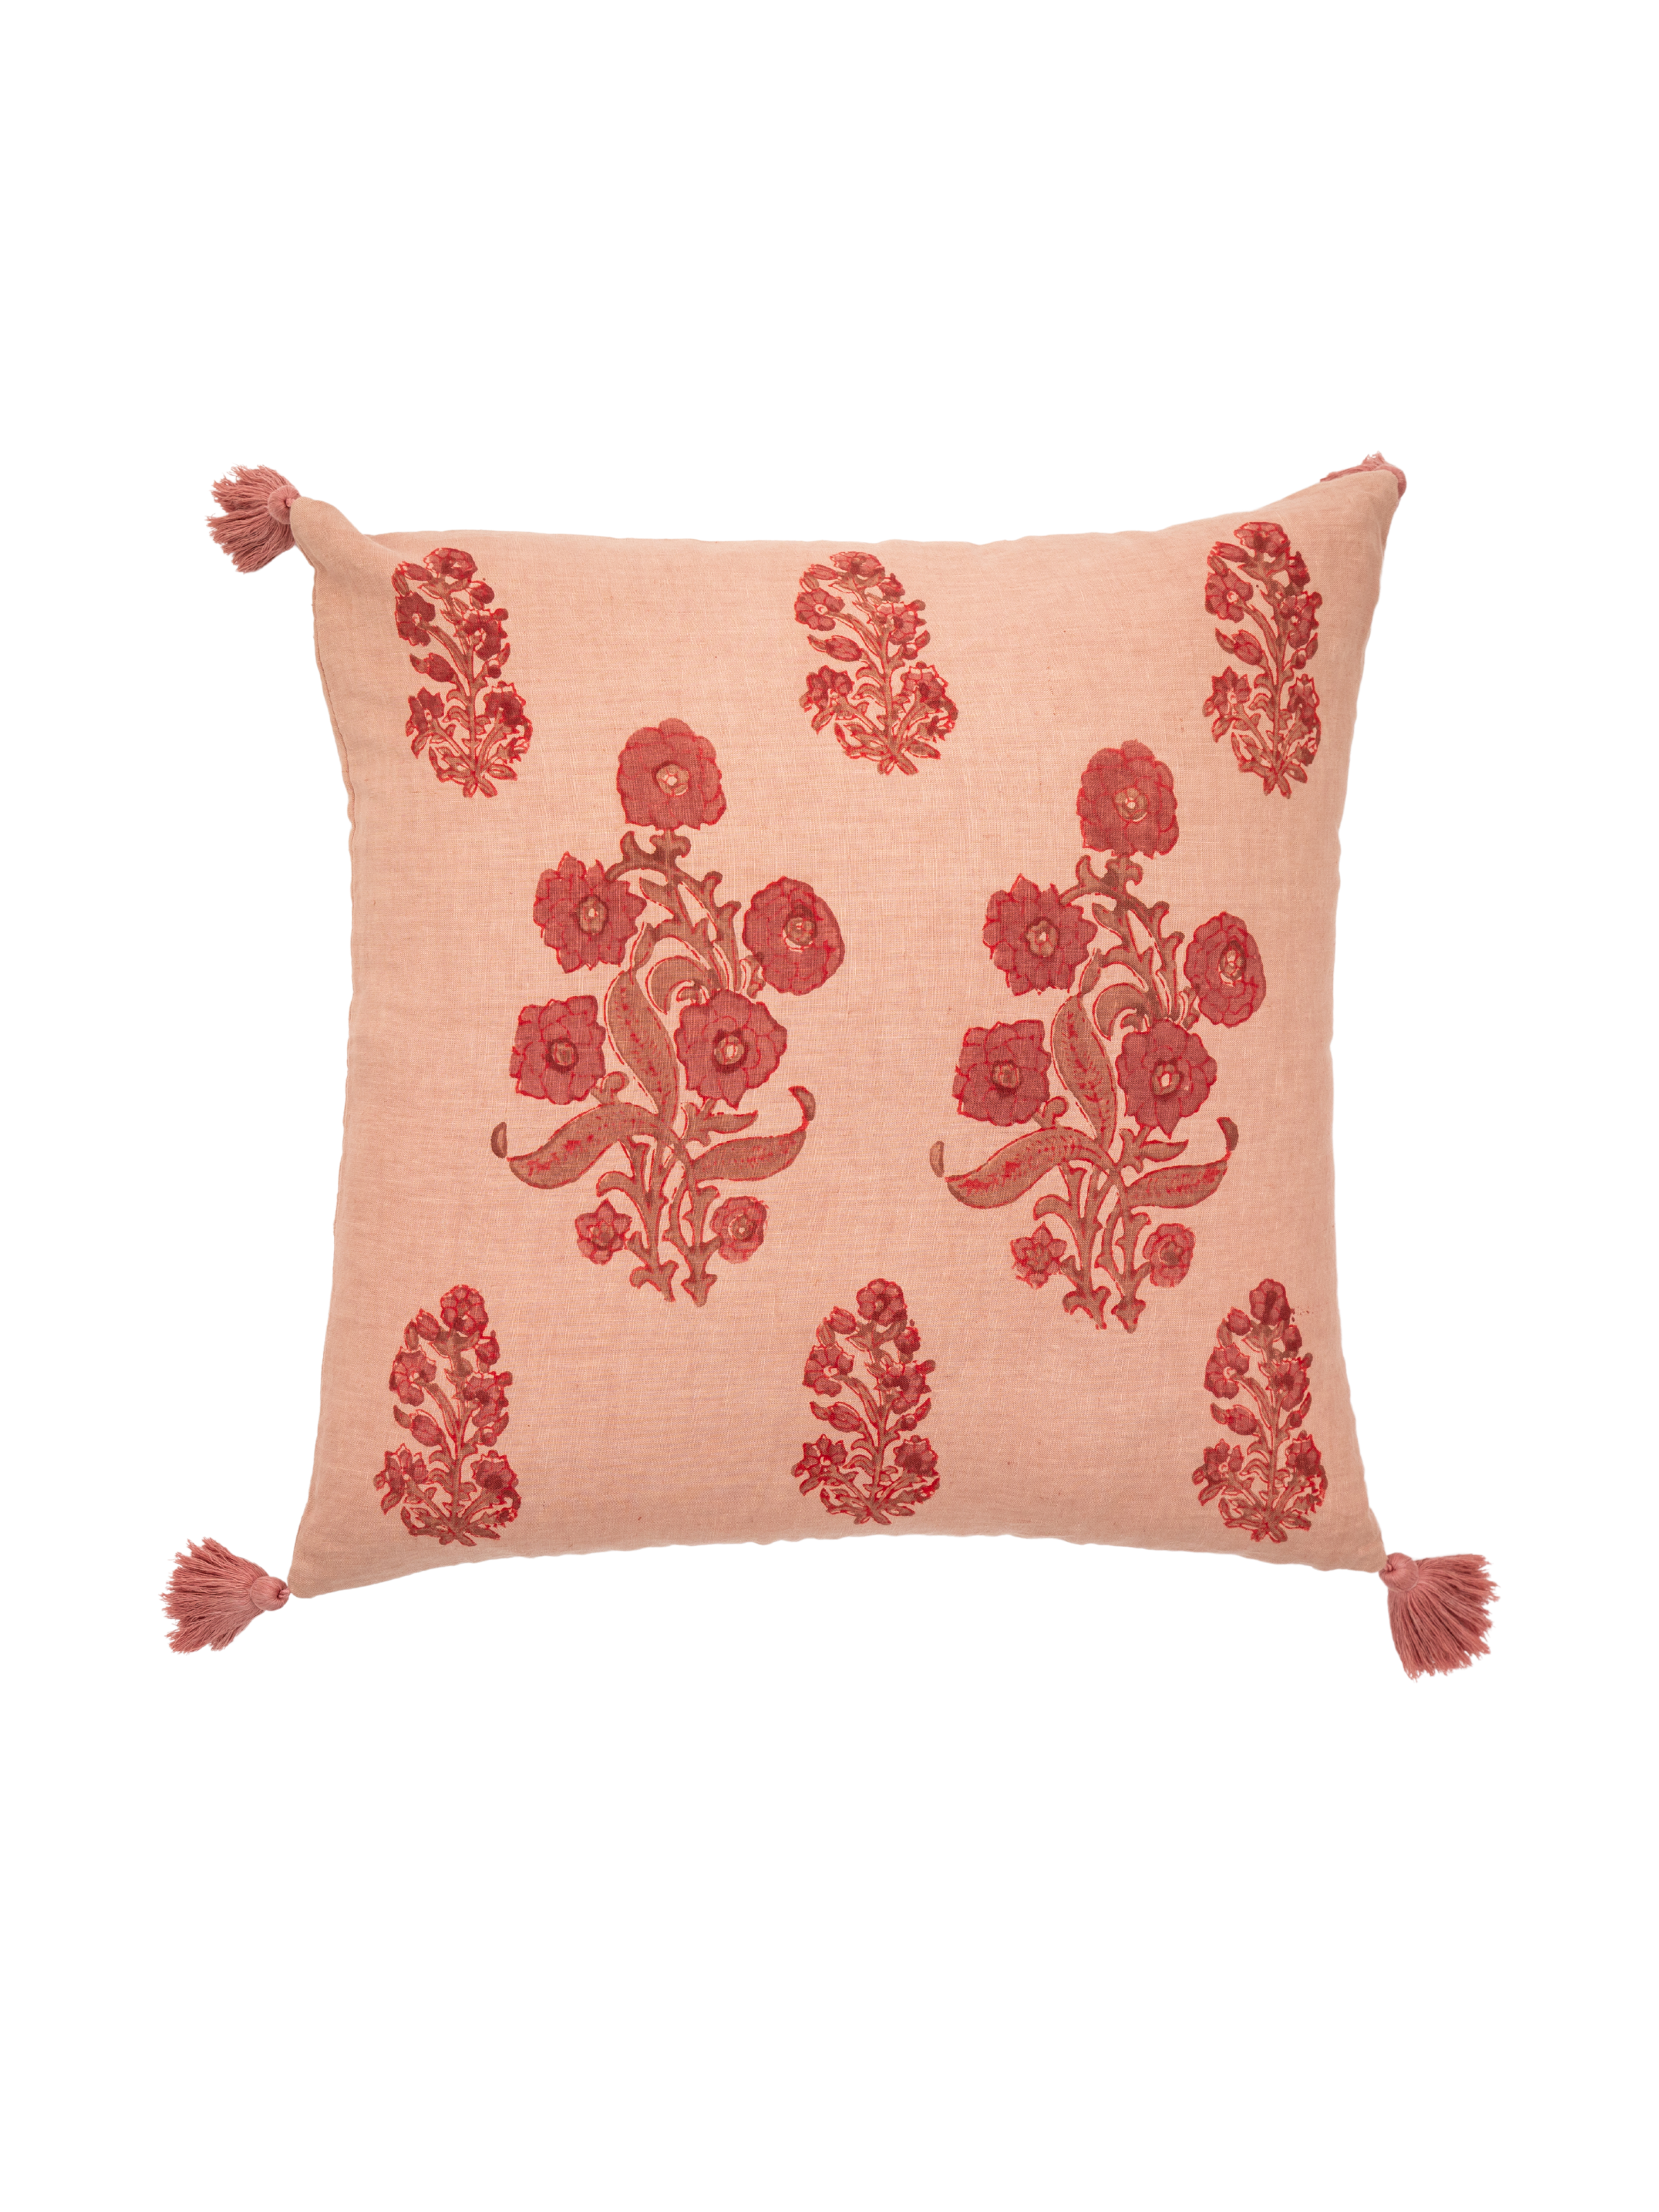 English Garden Decorative Pillow Cover